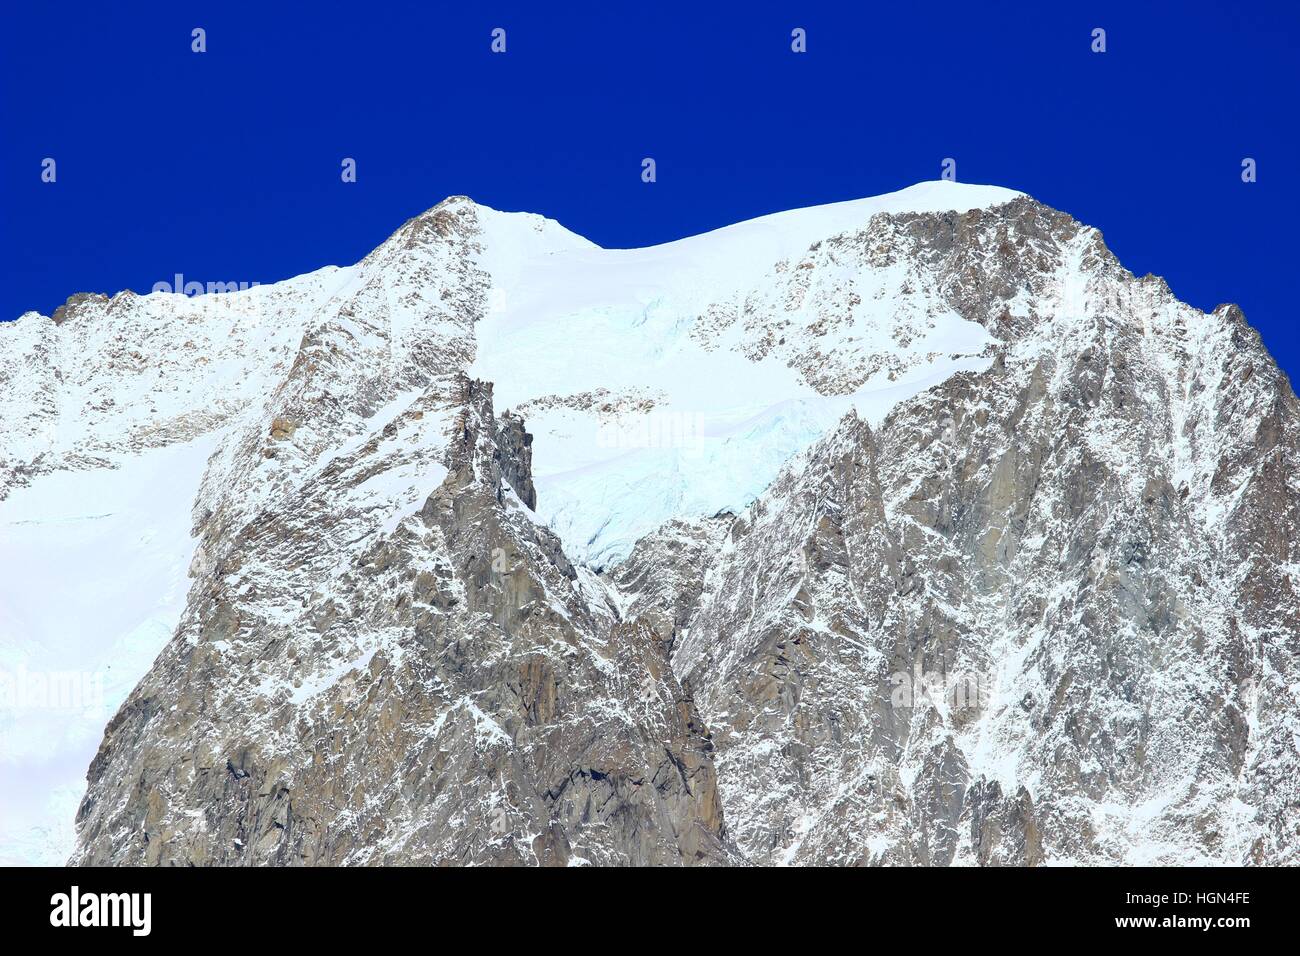 Grandes Jorasses con ghiacciaio nel massiccio del Monte Bianco, nelle Alpi, sulla frontiera Francia-Italia Foto Stock